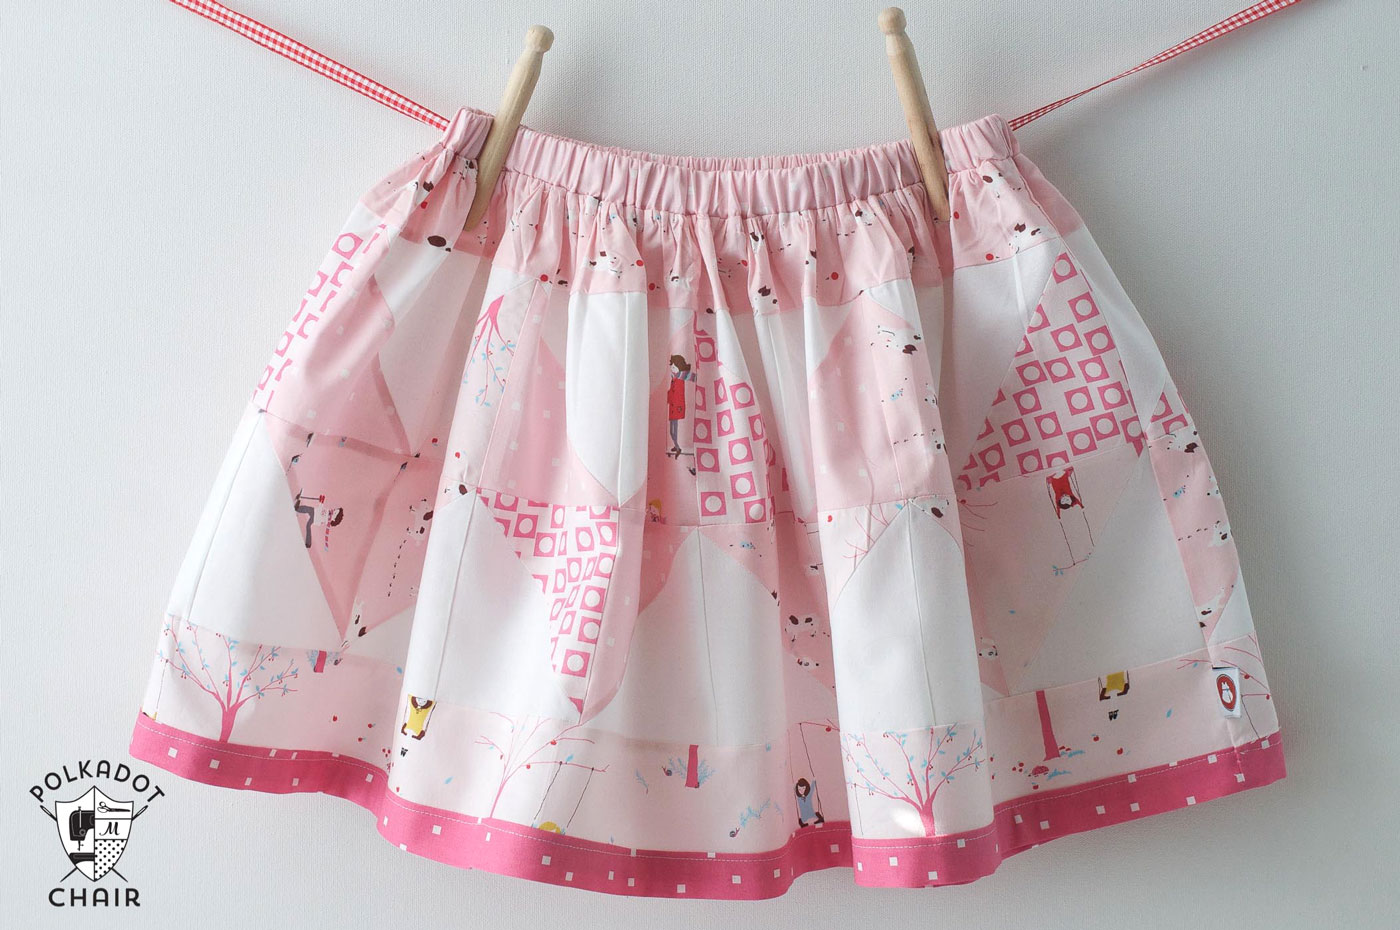 Tutoriel de couture gratuit pour réaliser une jupe en patchwork en zigzag pour petites filles - utilise des packs de charmes - super rapide et mignon !